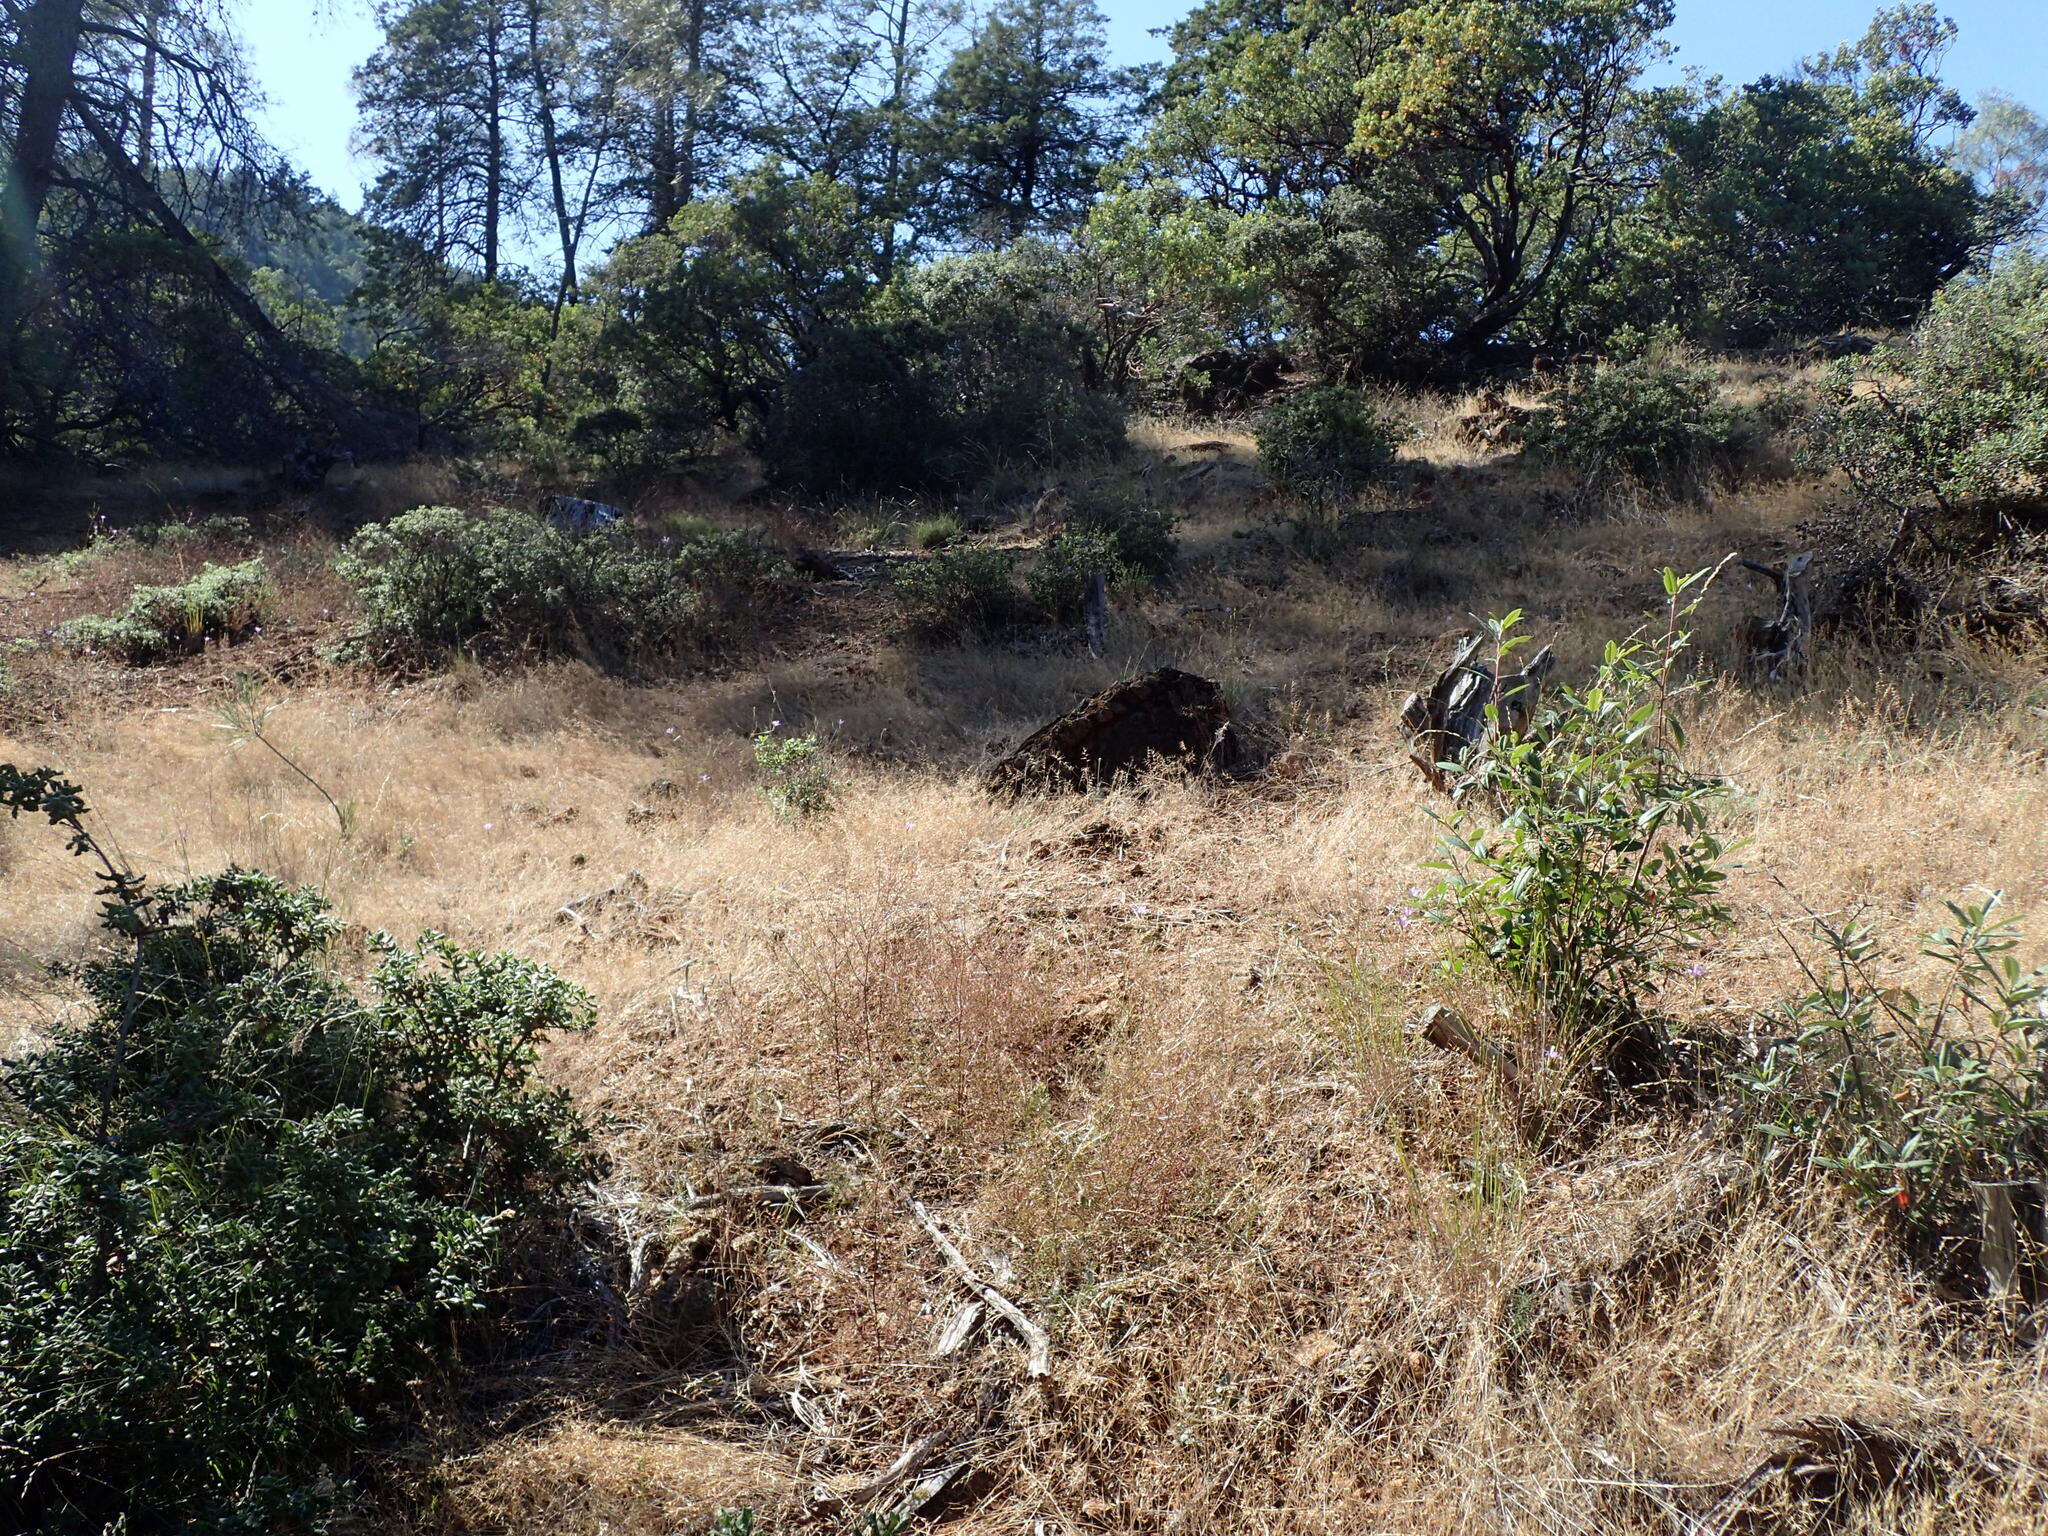 Image of California brodiaea